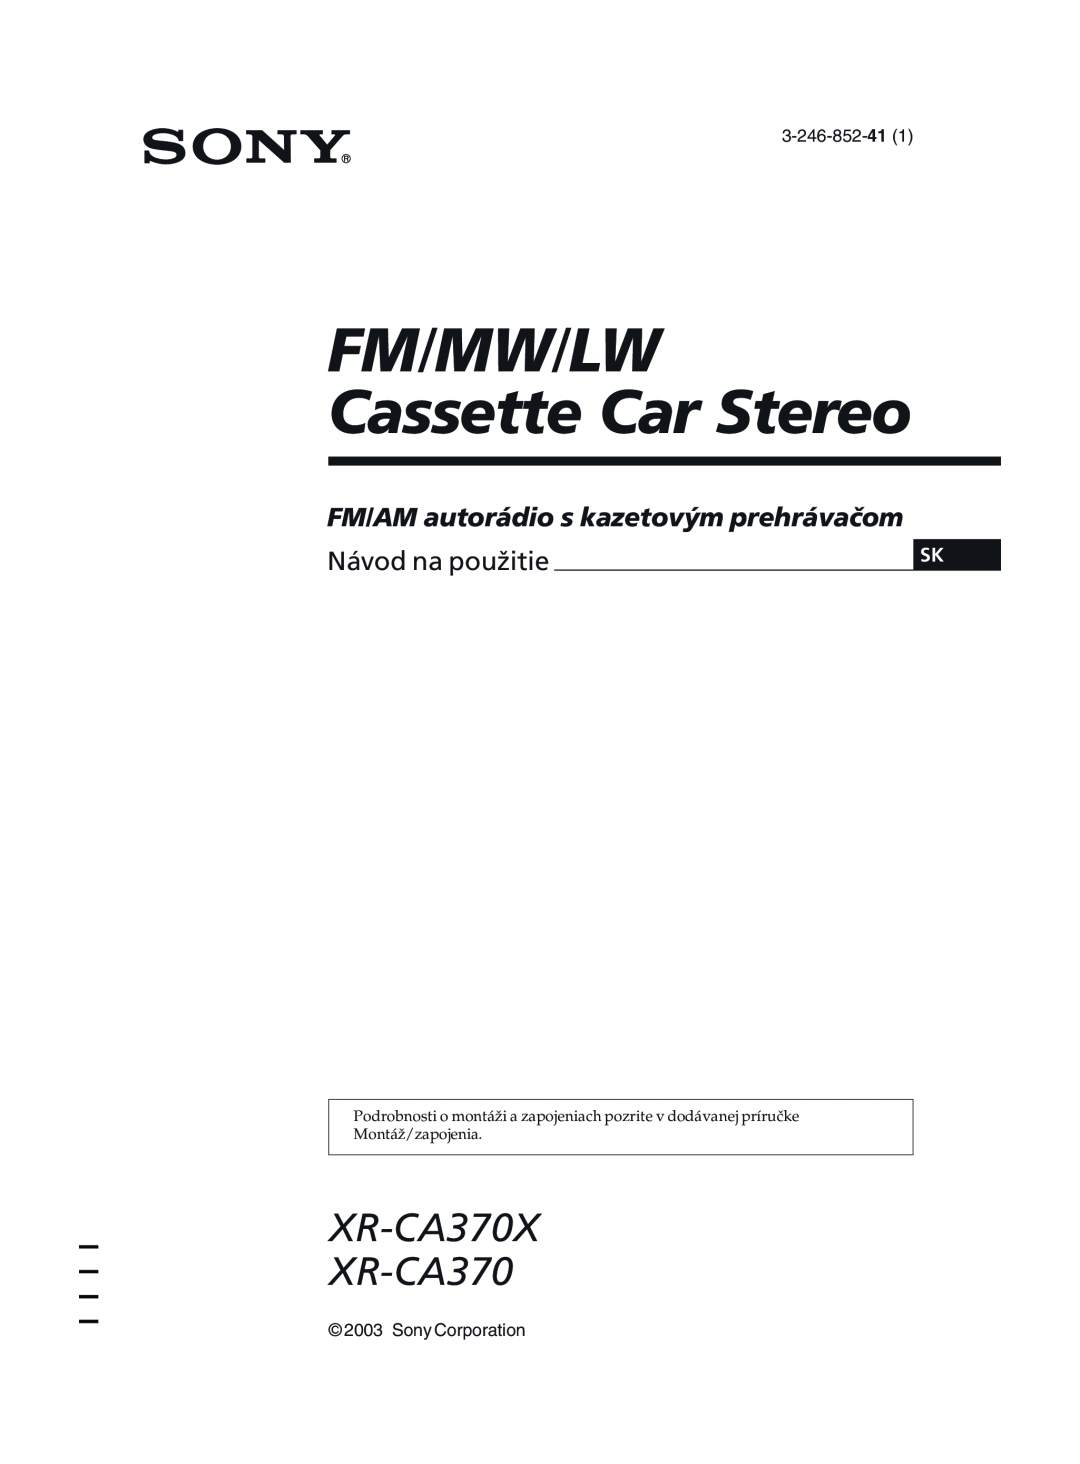 Sony manual FM/MW/LW Cassette Car Stereo, XR-CA370X XR-CA370, FM/AM autorádio s kazetovým prehrávačom, 3-246-852-41 